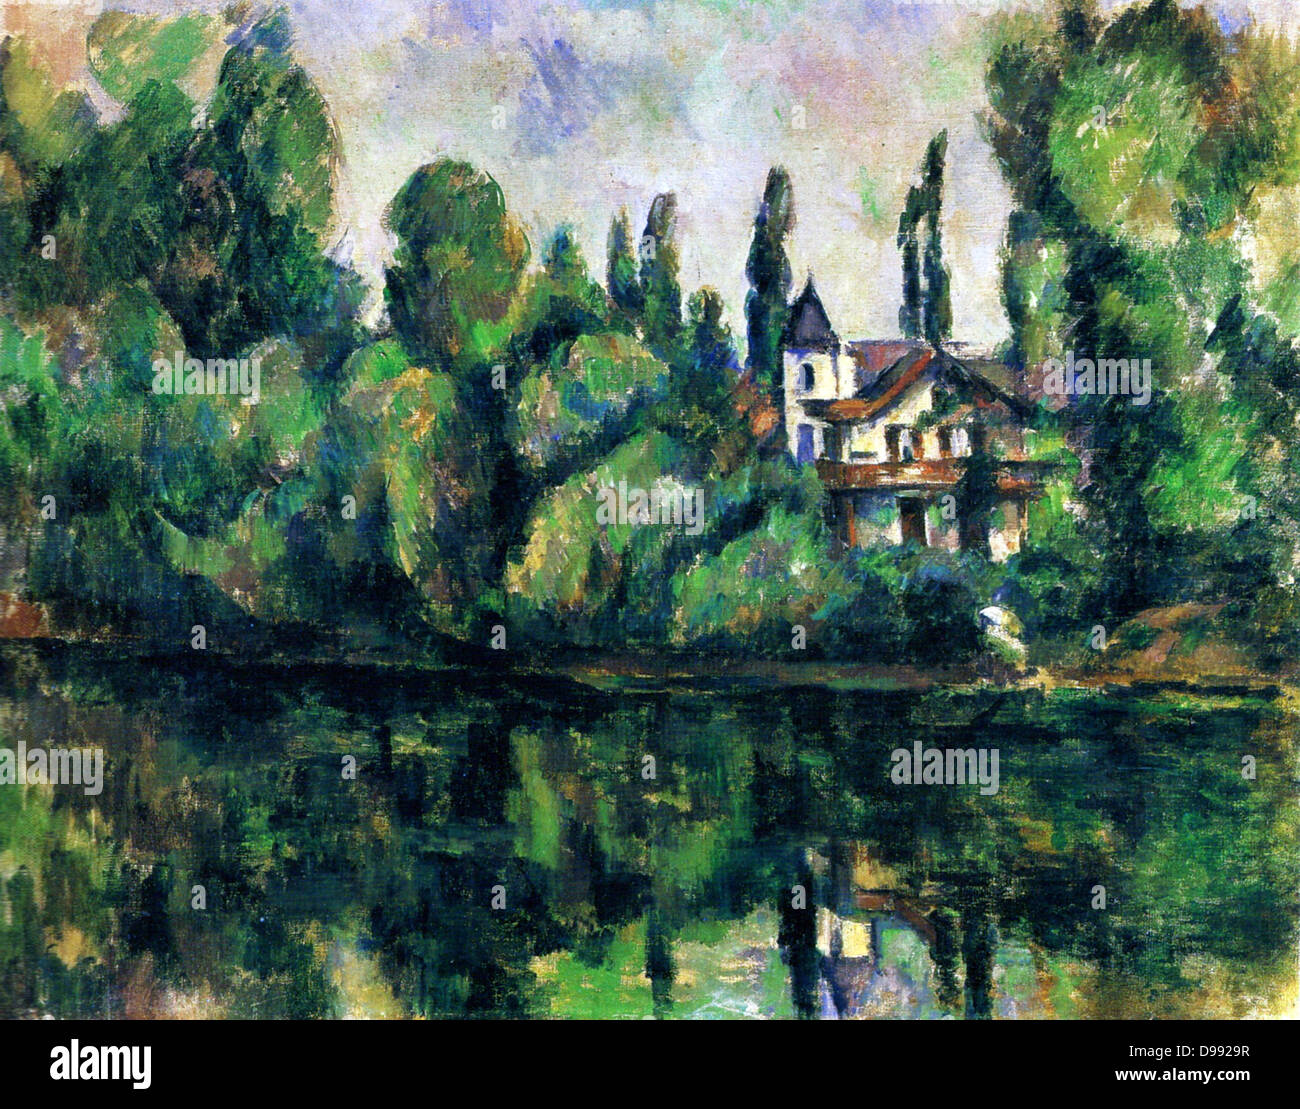 Die Ufer der Marne", 1888, Öl auf Leinwand. Paul Cezanne (1839-1906) French Post-Impressionist Painter. Landschaft Wasser Haus Villa Bäume Reflexion Stockfoto